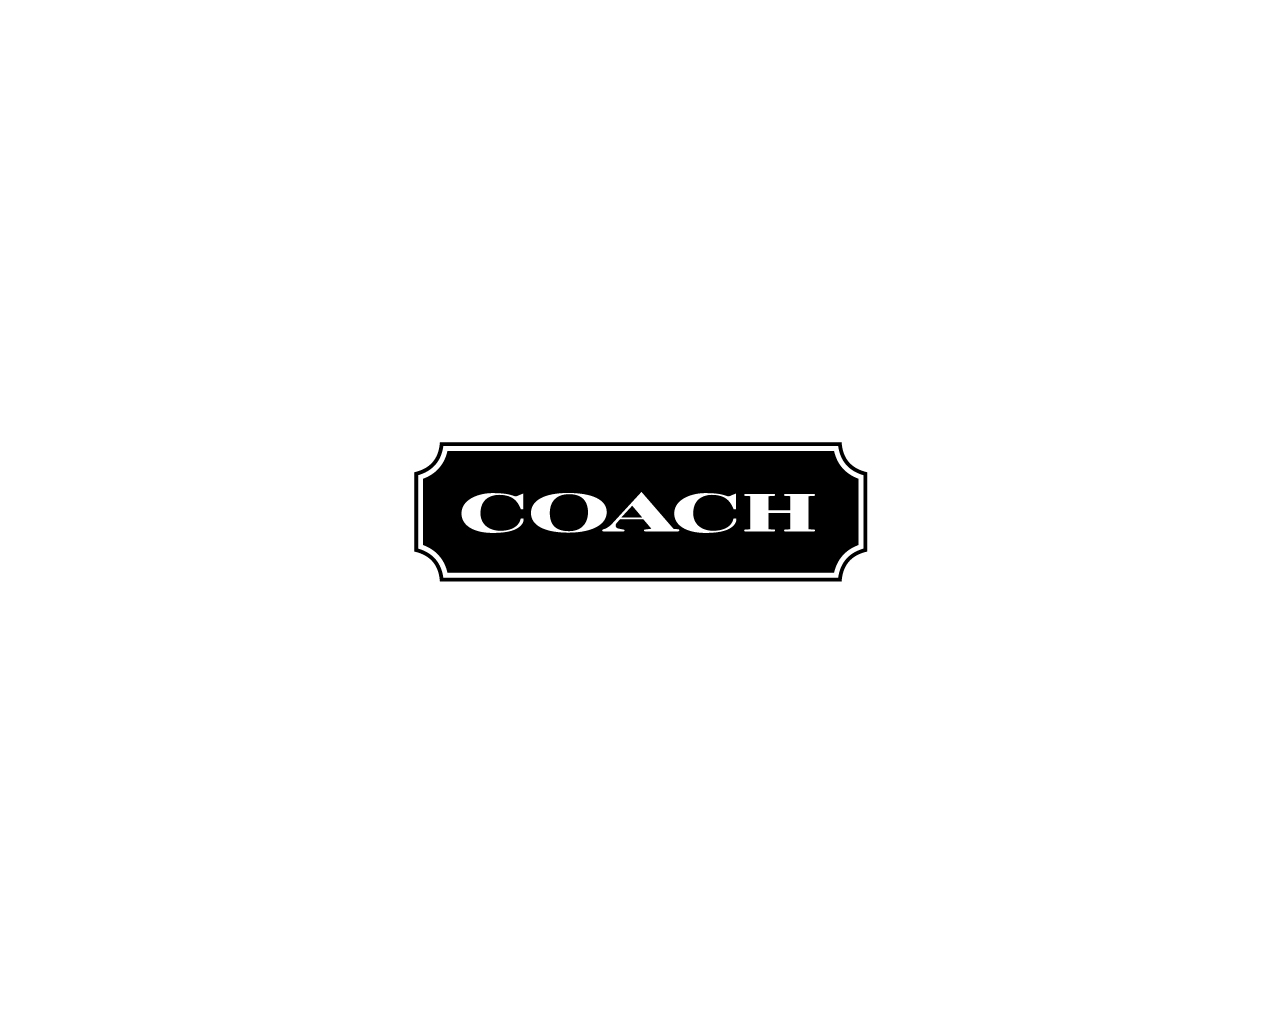 Coach Logo PNG Image HD